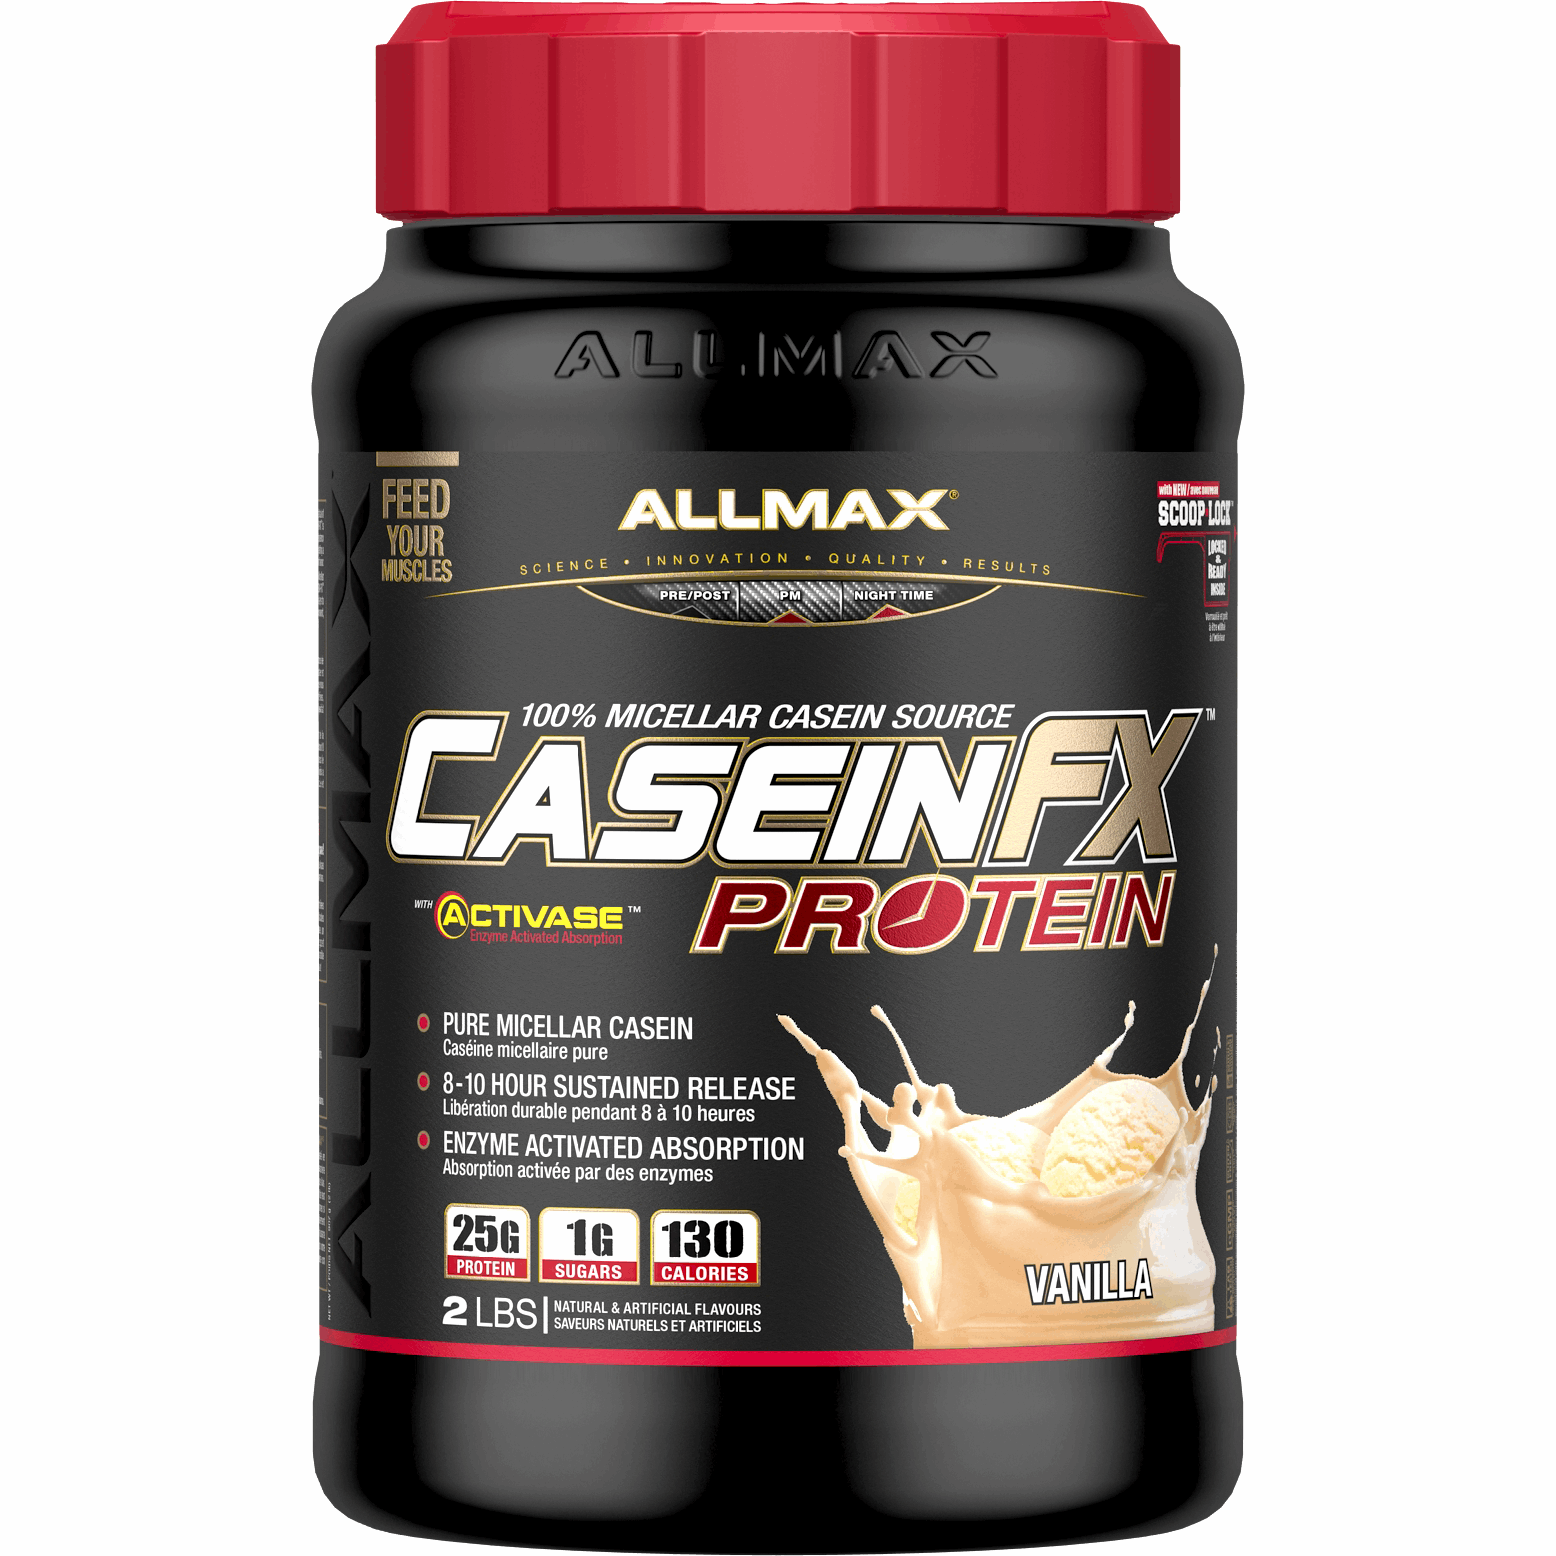 ALLMAX CaseinFX (2lbs) allmax-caseinfx-2lbs Casein Vanilla Allmax Nutrition